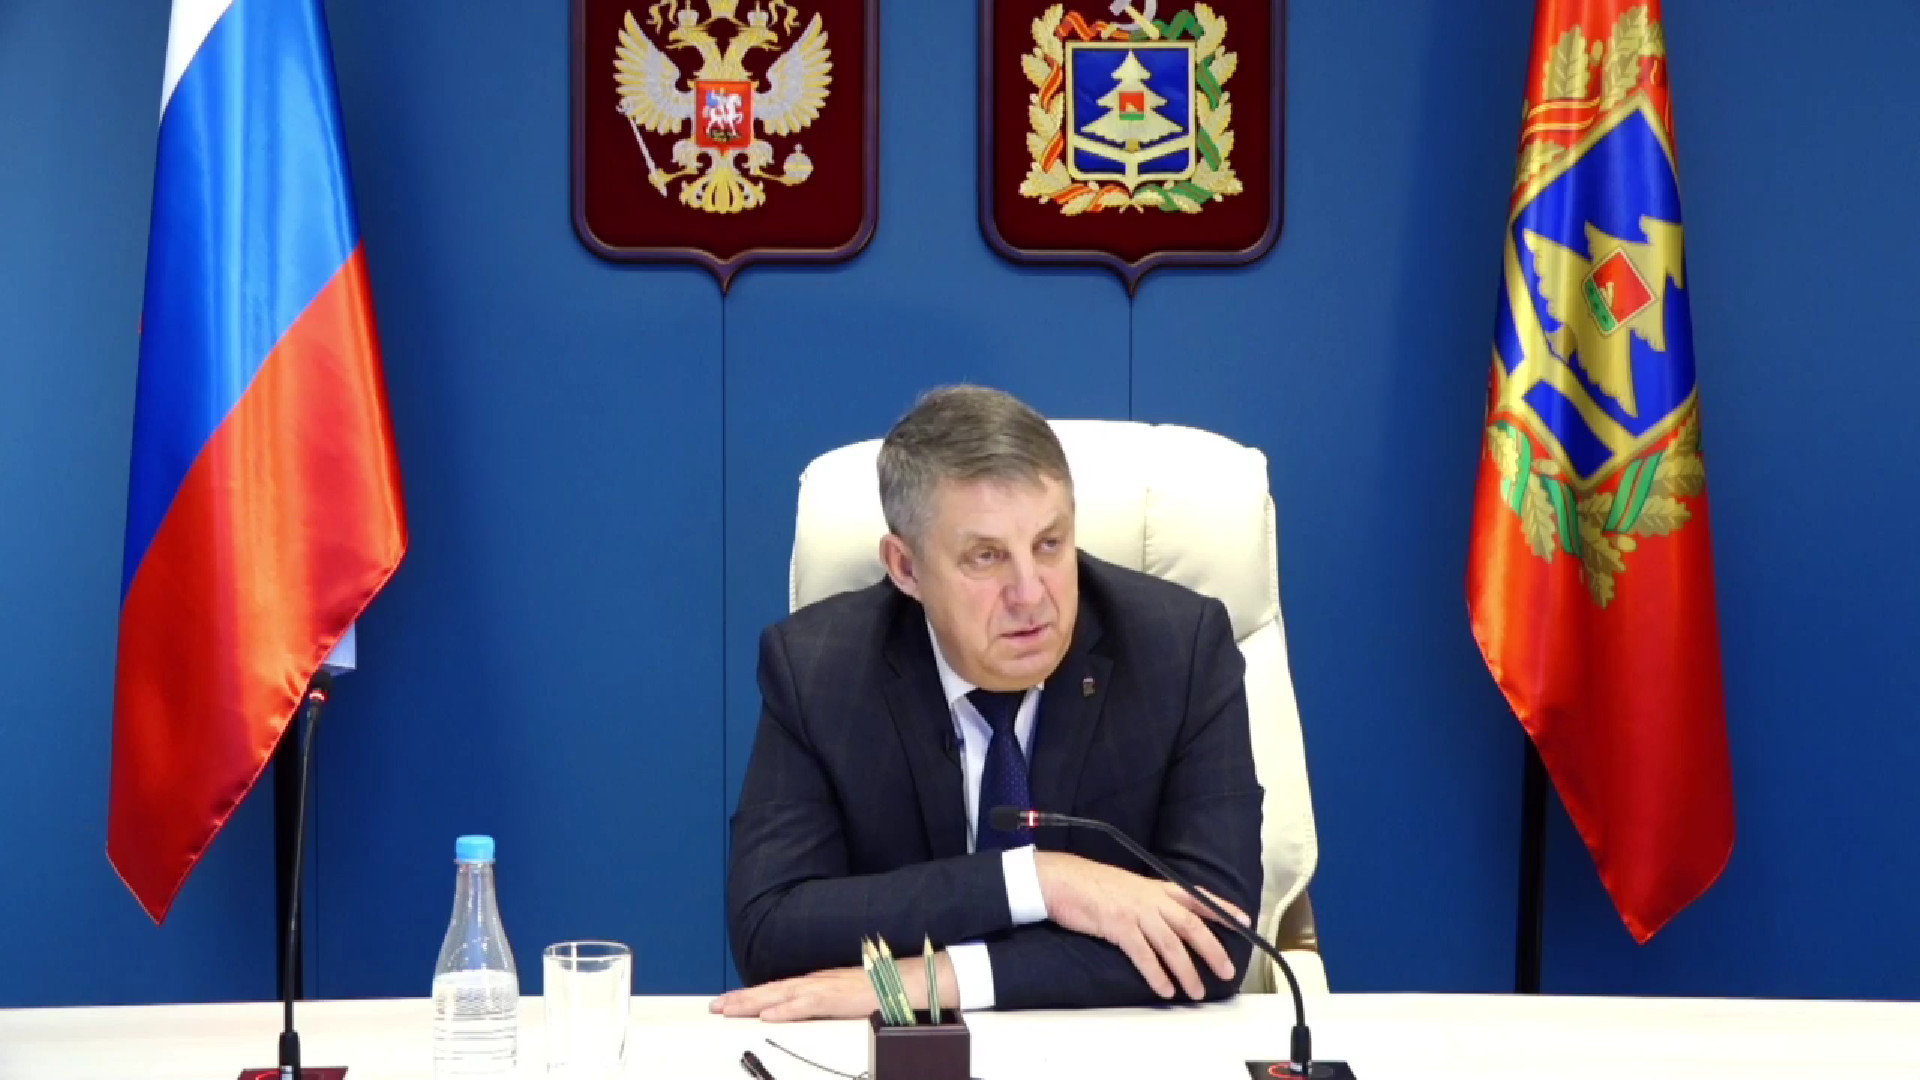 Трансляция прямой линии губернатора Александра Богомаза возобновлена во «ВКонтакте»